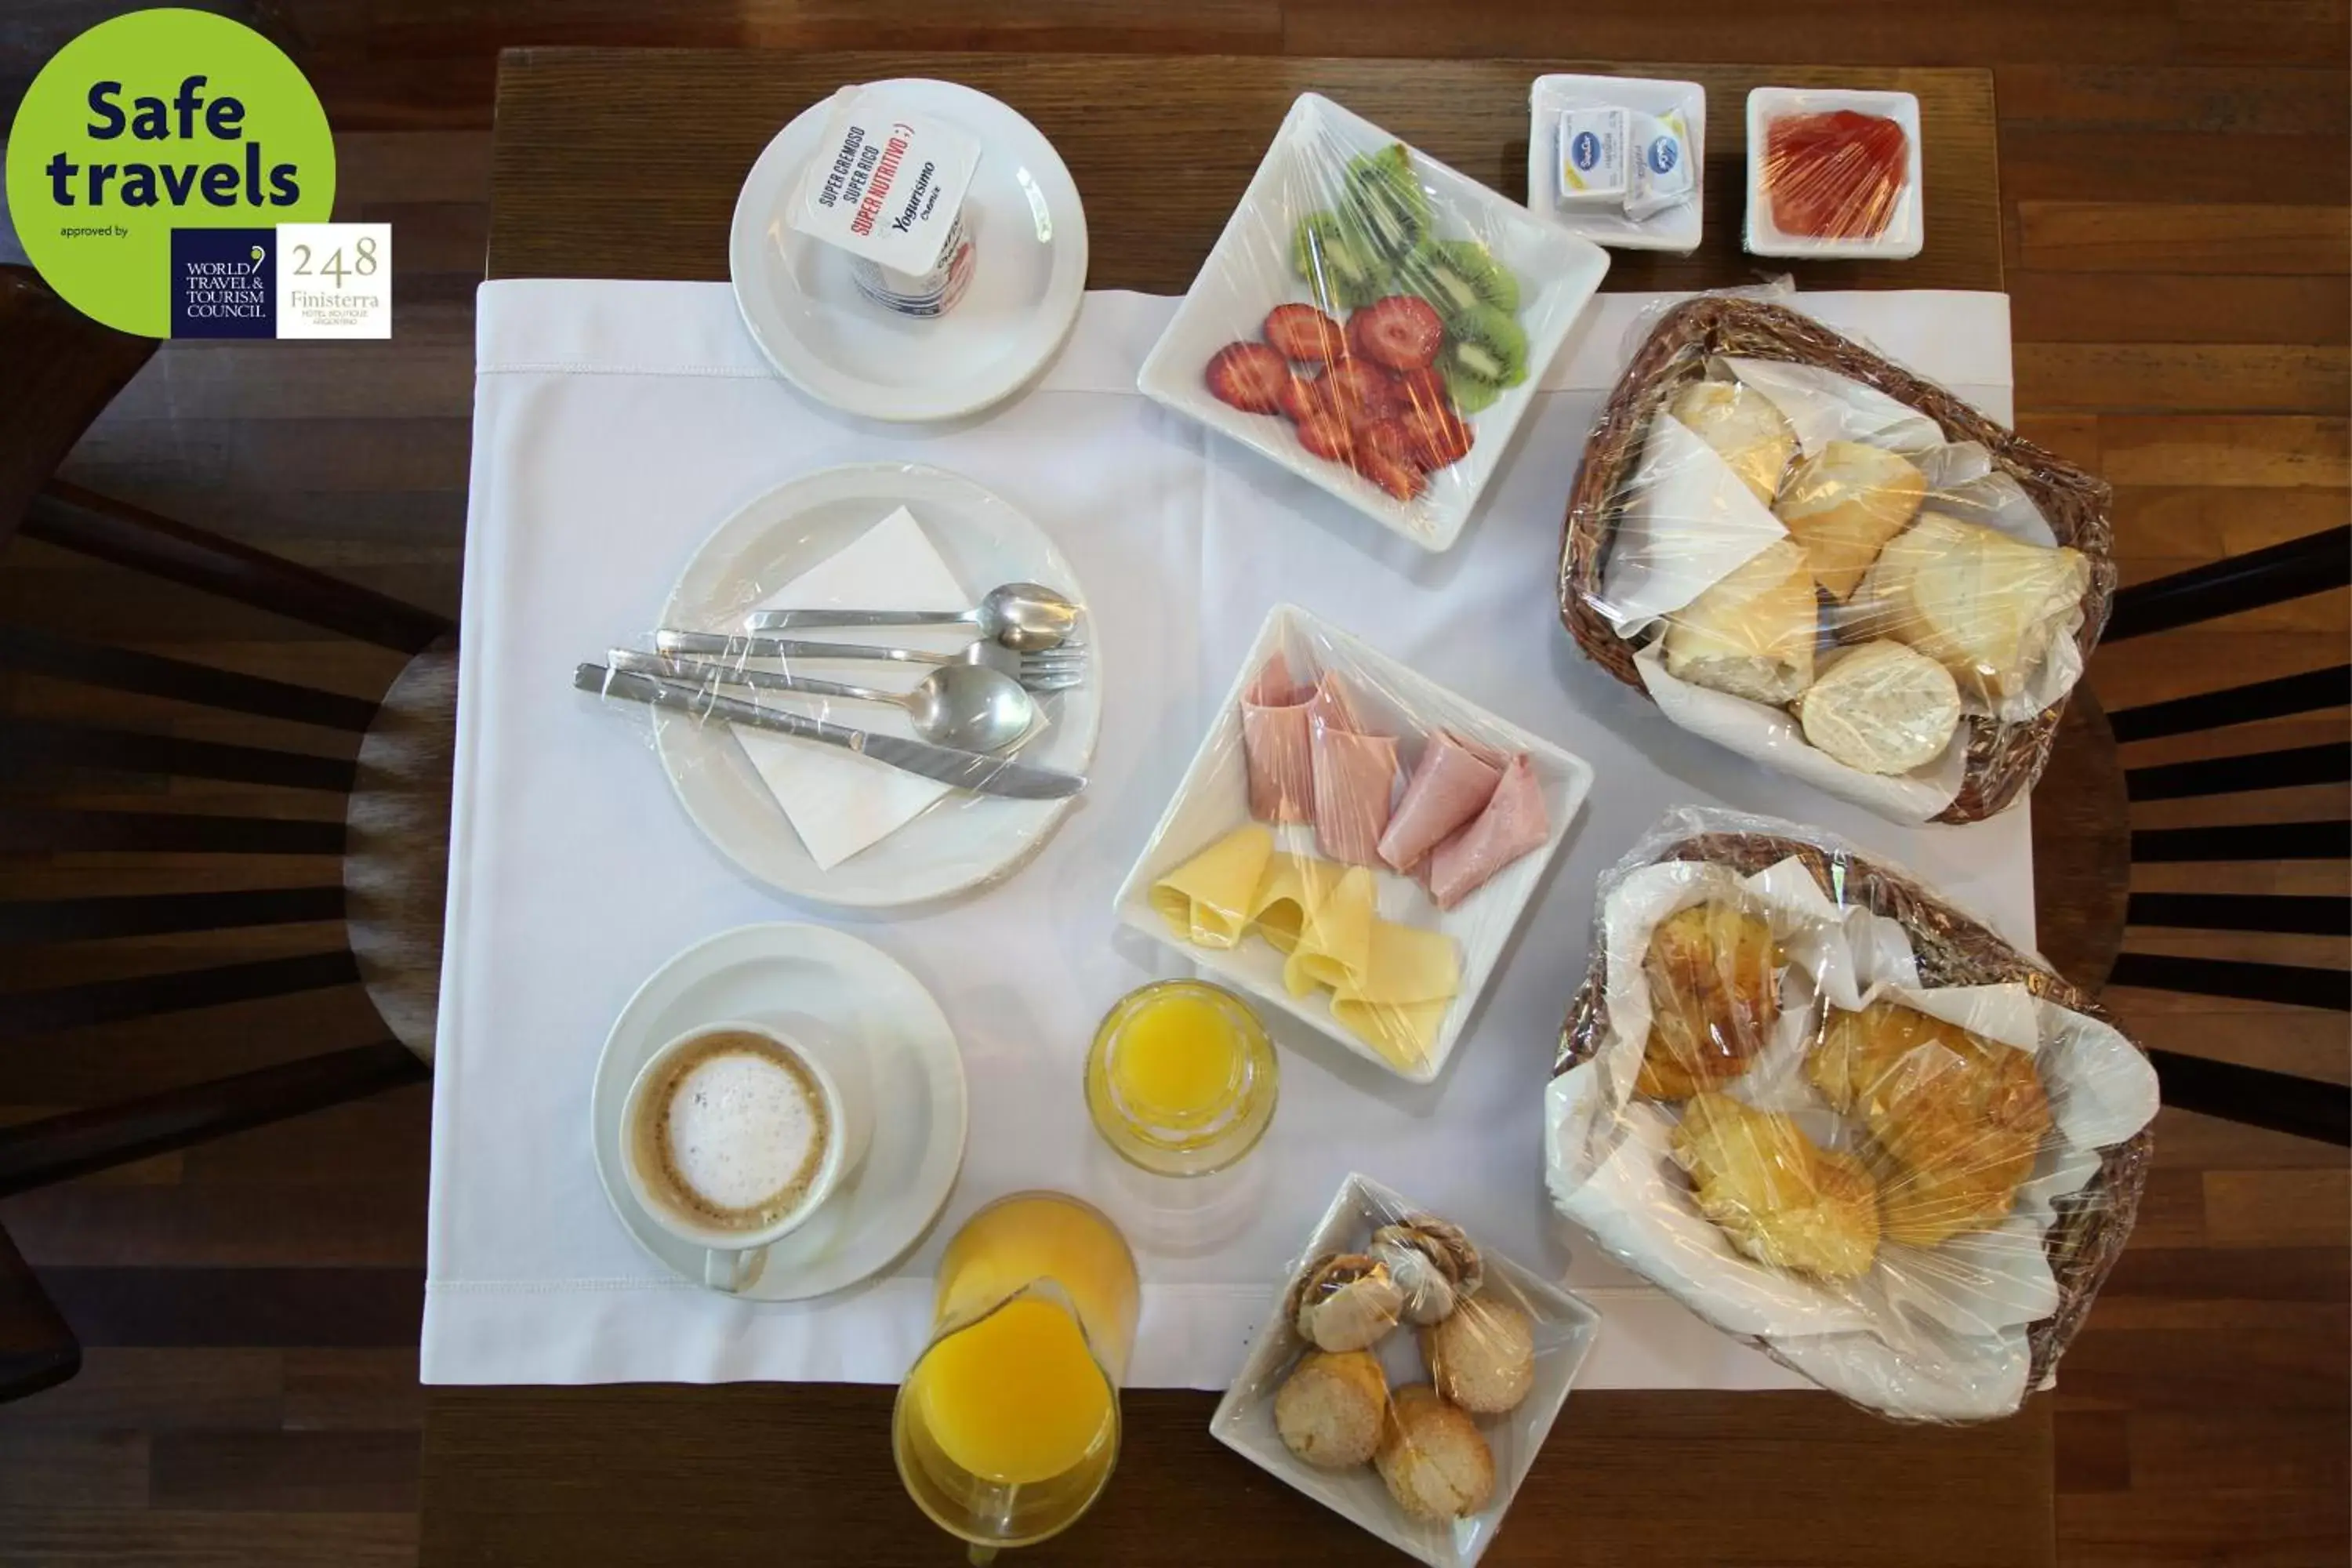 Breakfast in 248 Finisterra